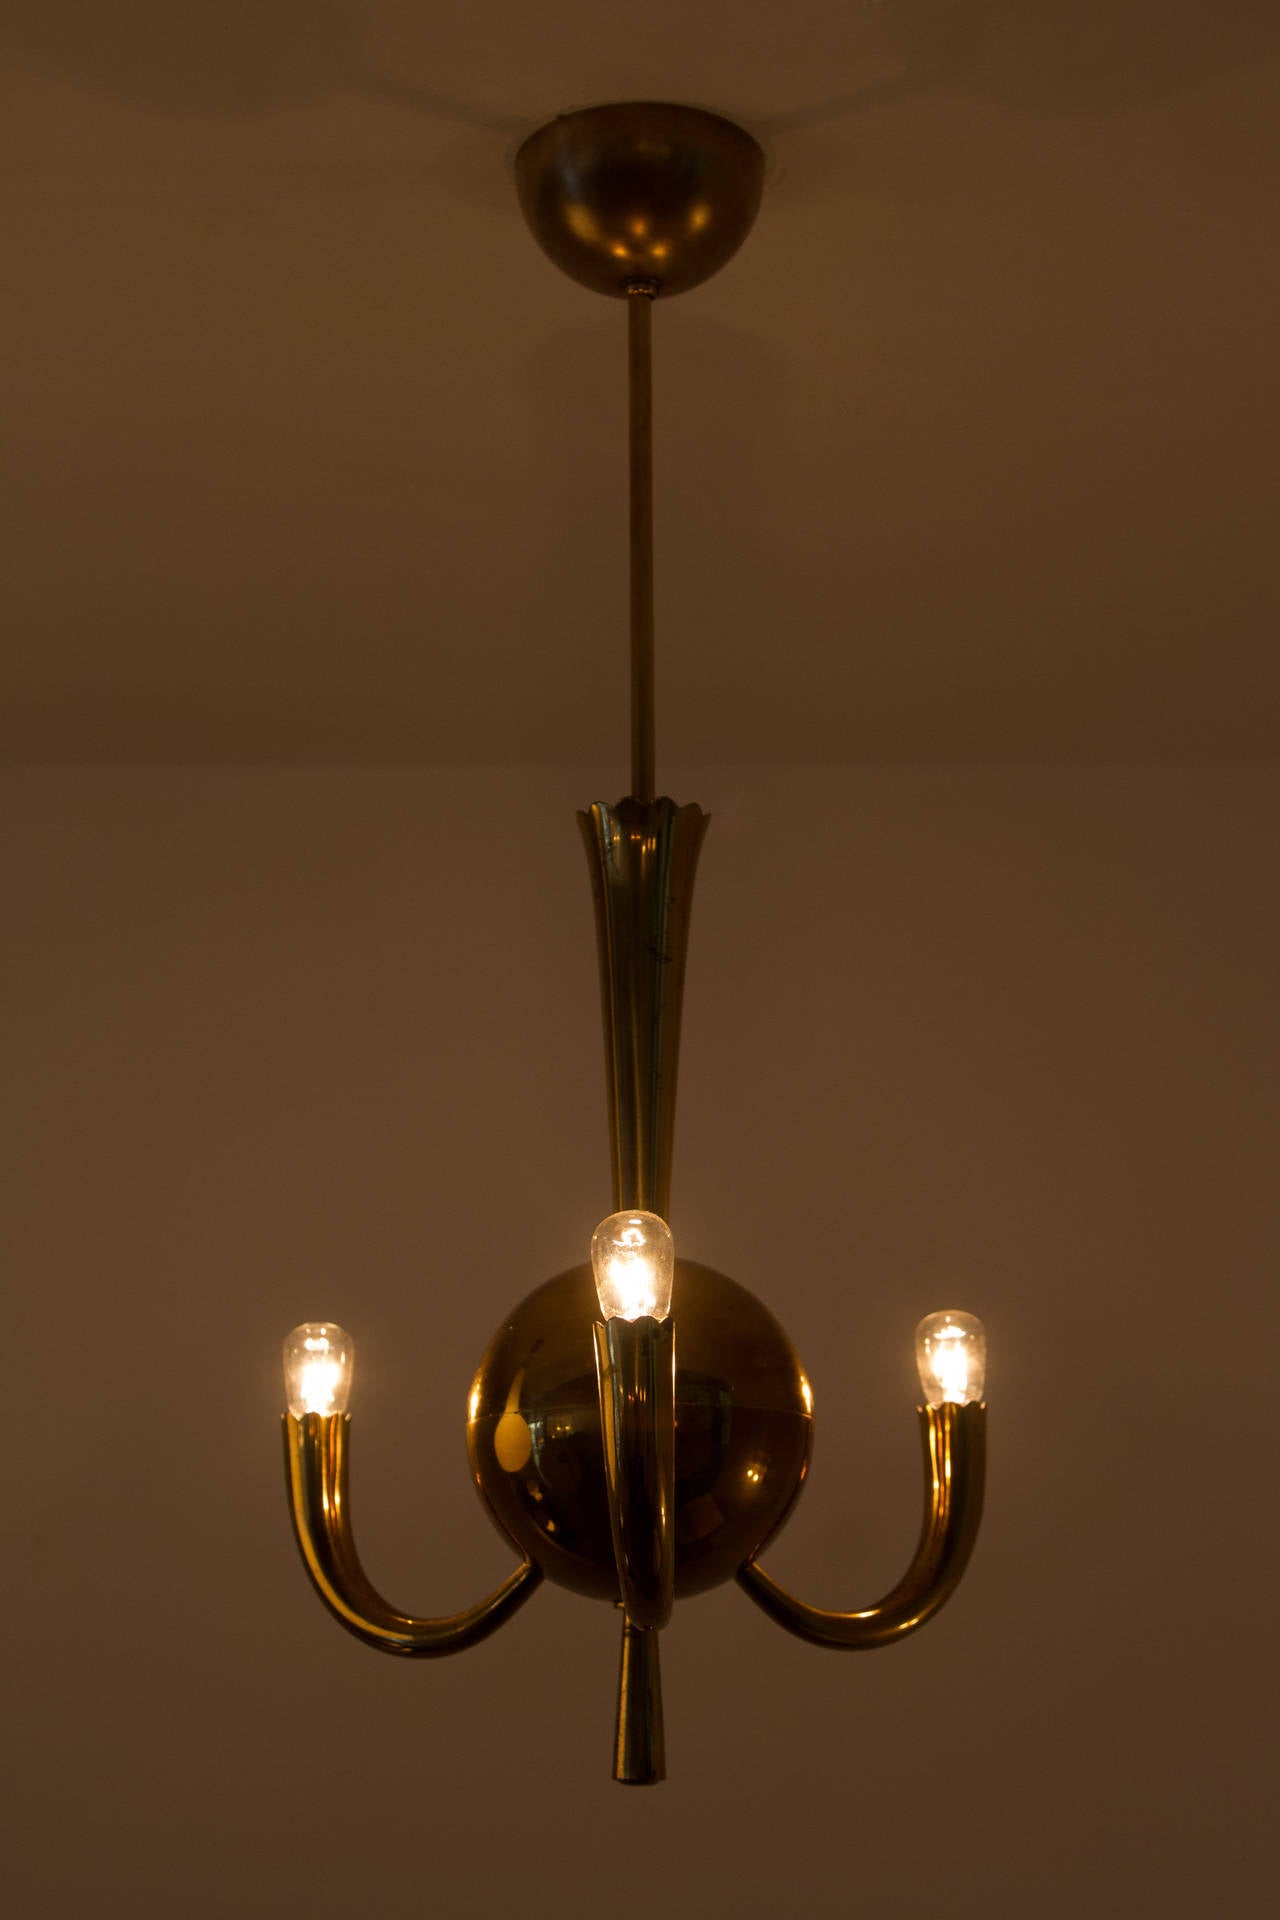 Rare brass three-arm chandelier, rewired.